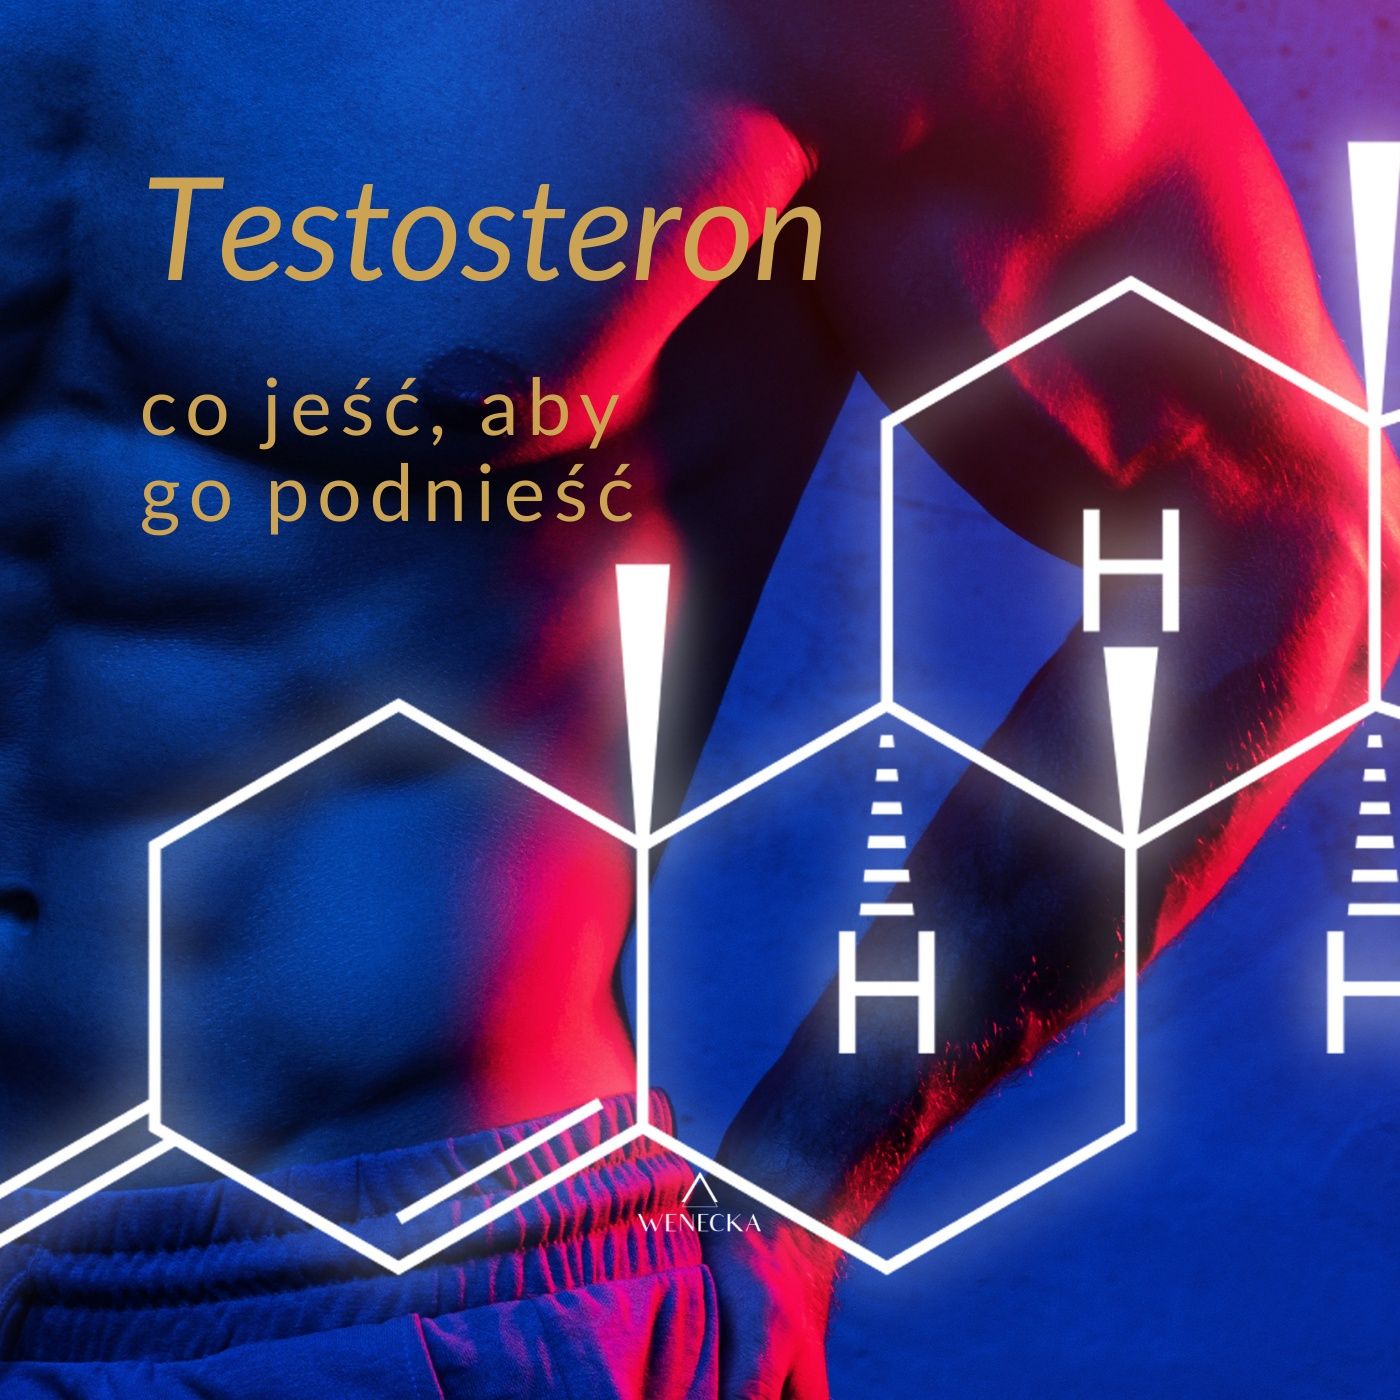 52. Co jeść, aby podnieść testosteron? | Wąsopad | Trenuj Lepiej Podcast